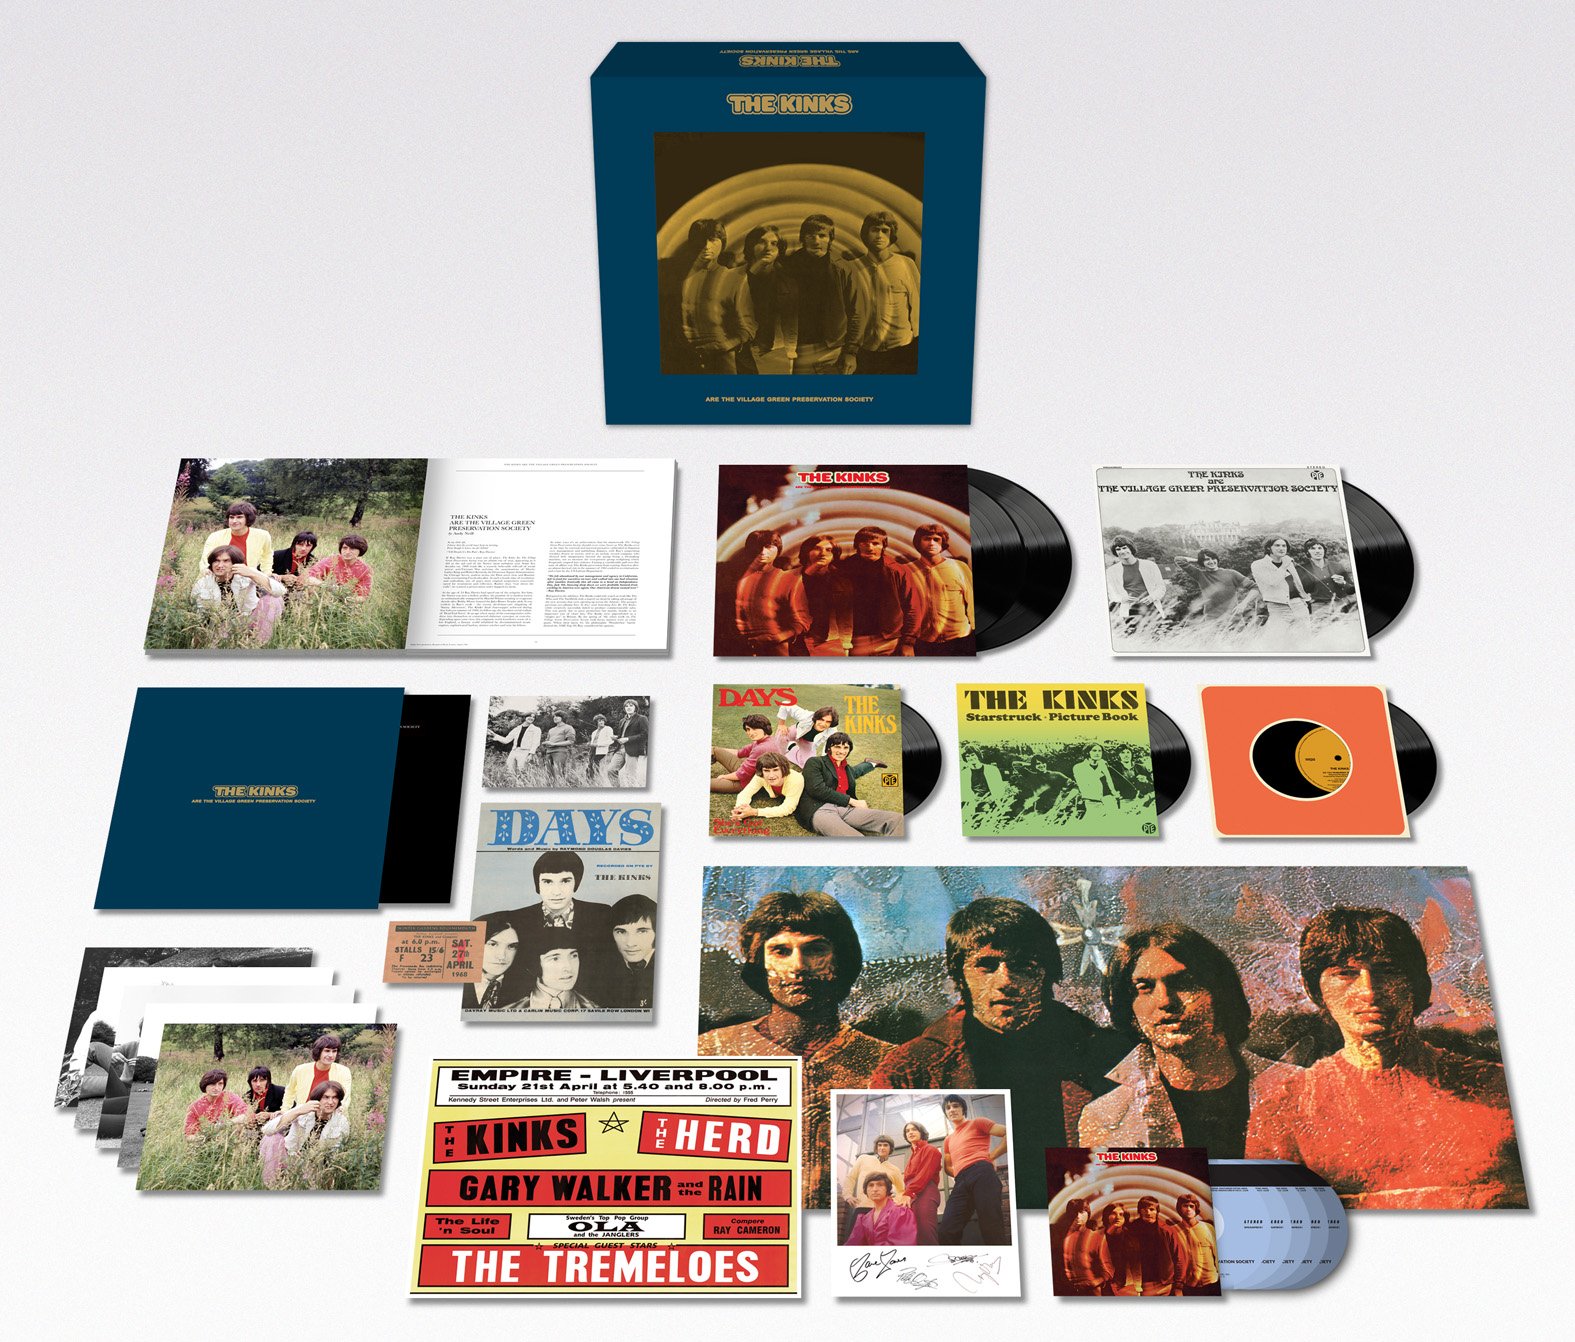 The Kinks: una band ed un disco che hanno fatto la storia del rock